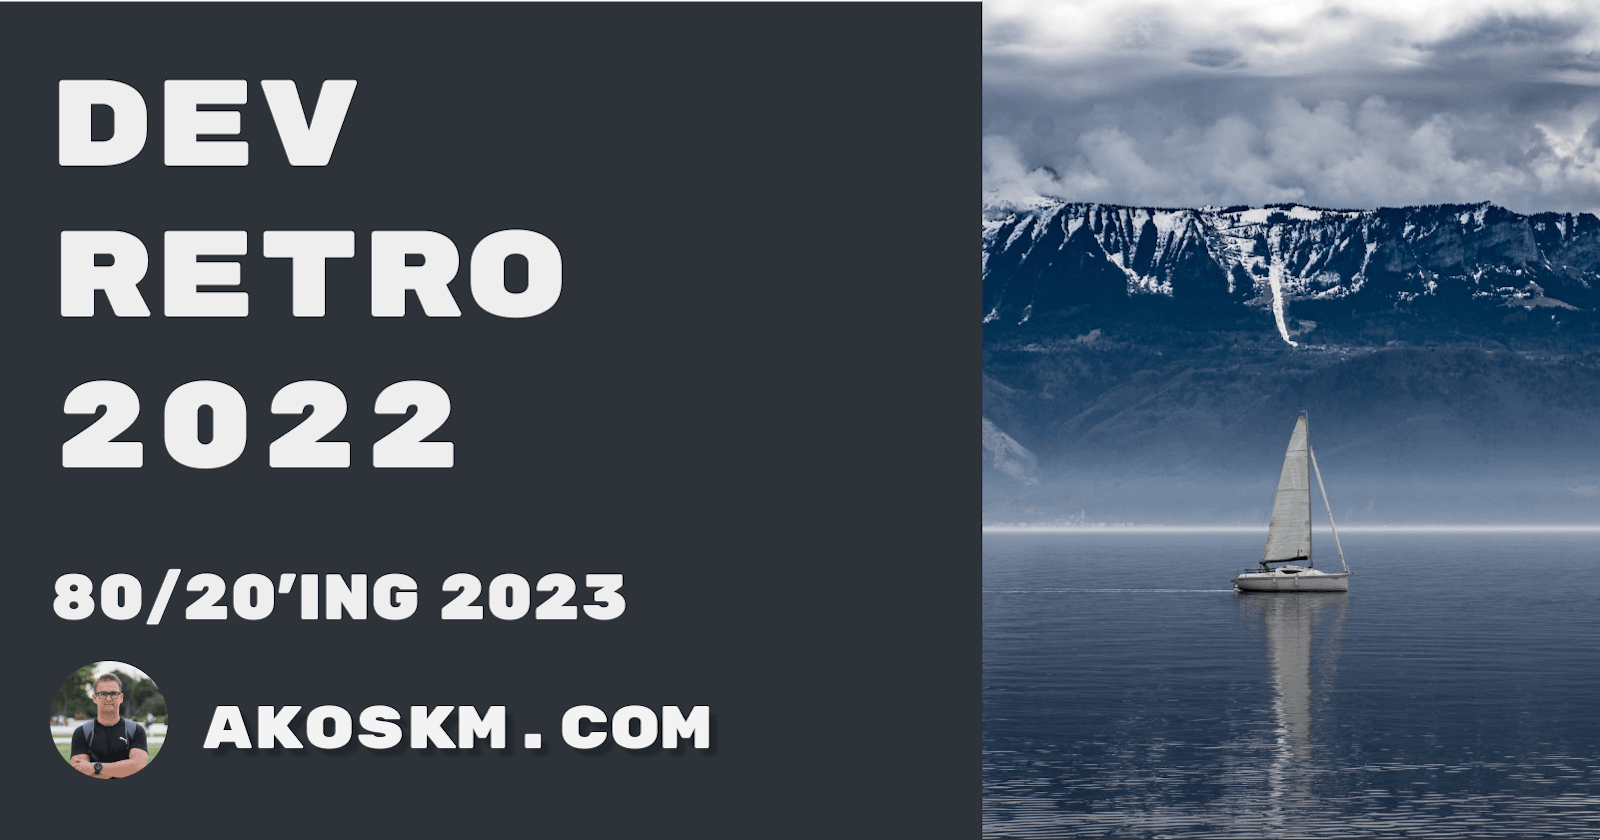 Dev Retro 2022 - 80/20'ing 2023